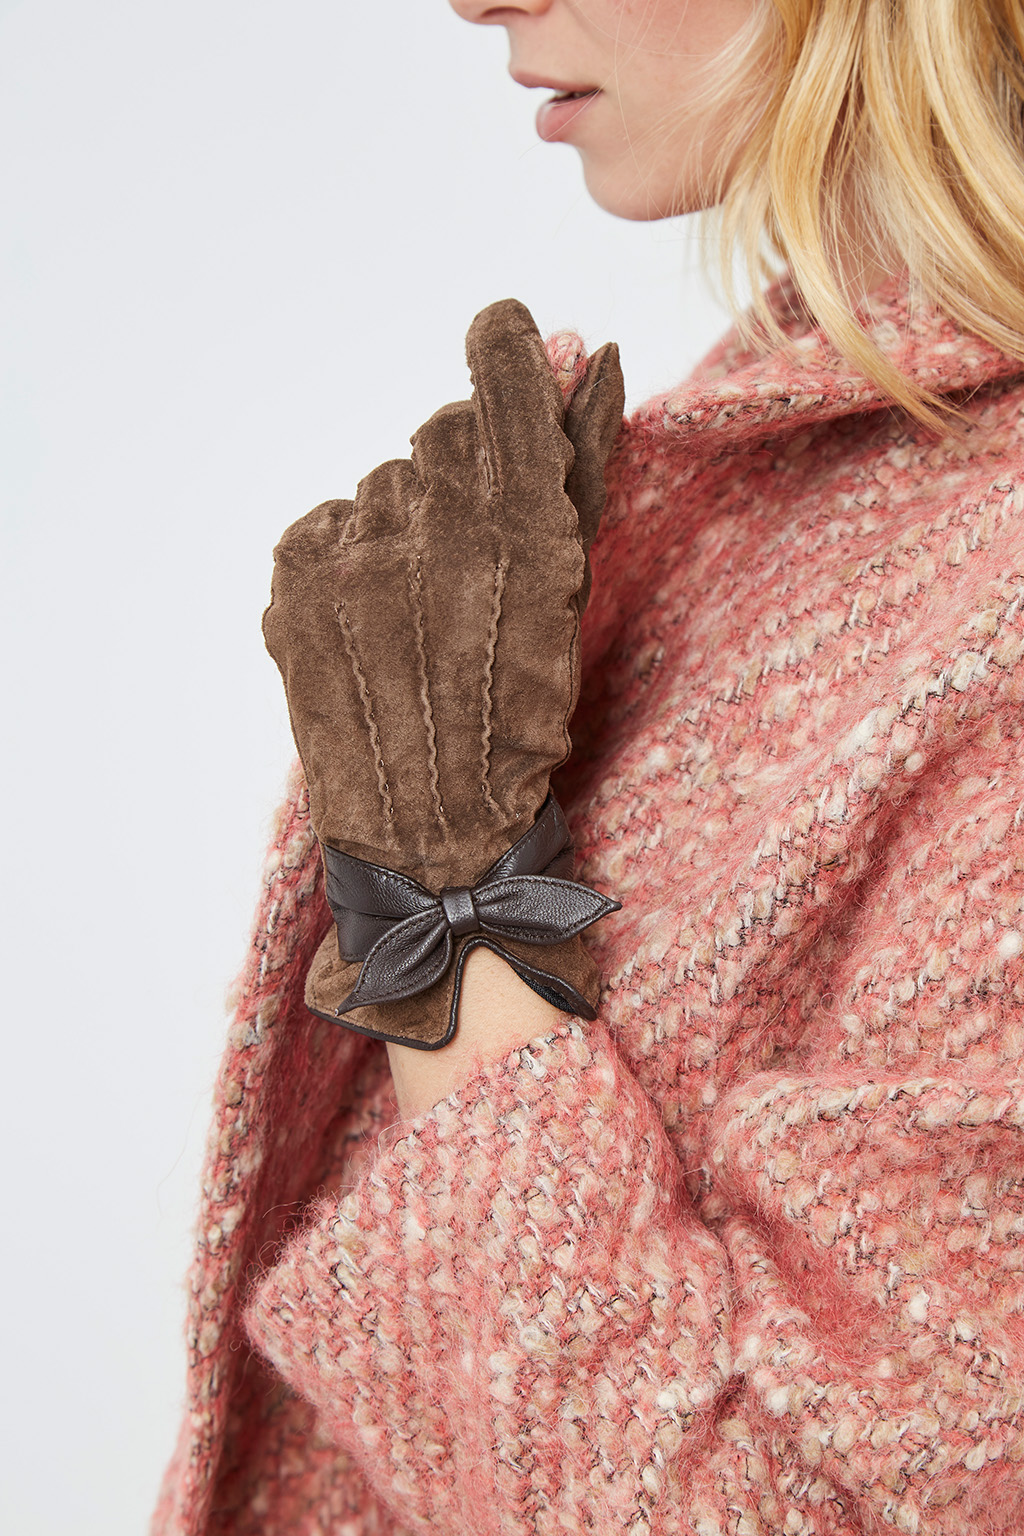 Vente privée Showroomprivé Camaieu accessoires pour femme, gants en cuir retourné marron et noeud